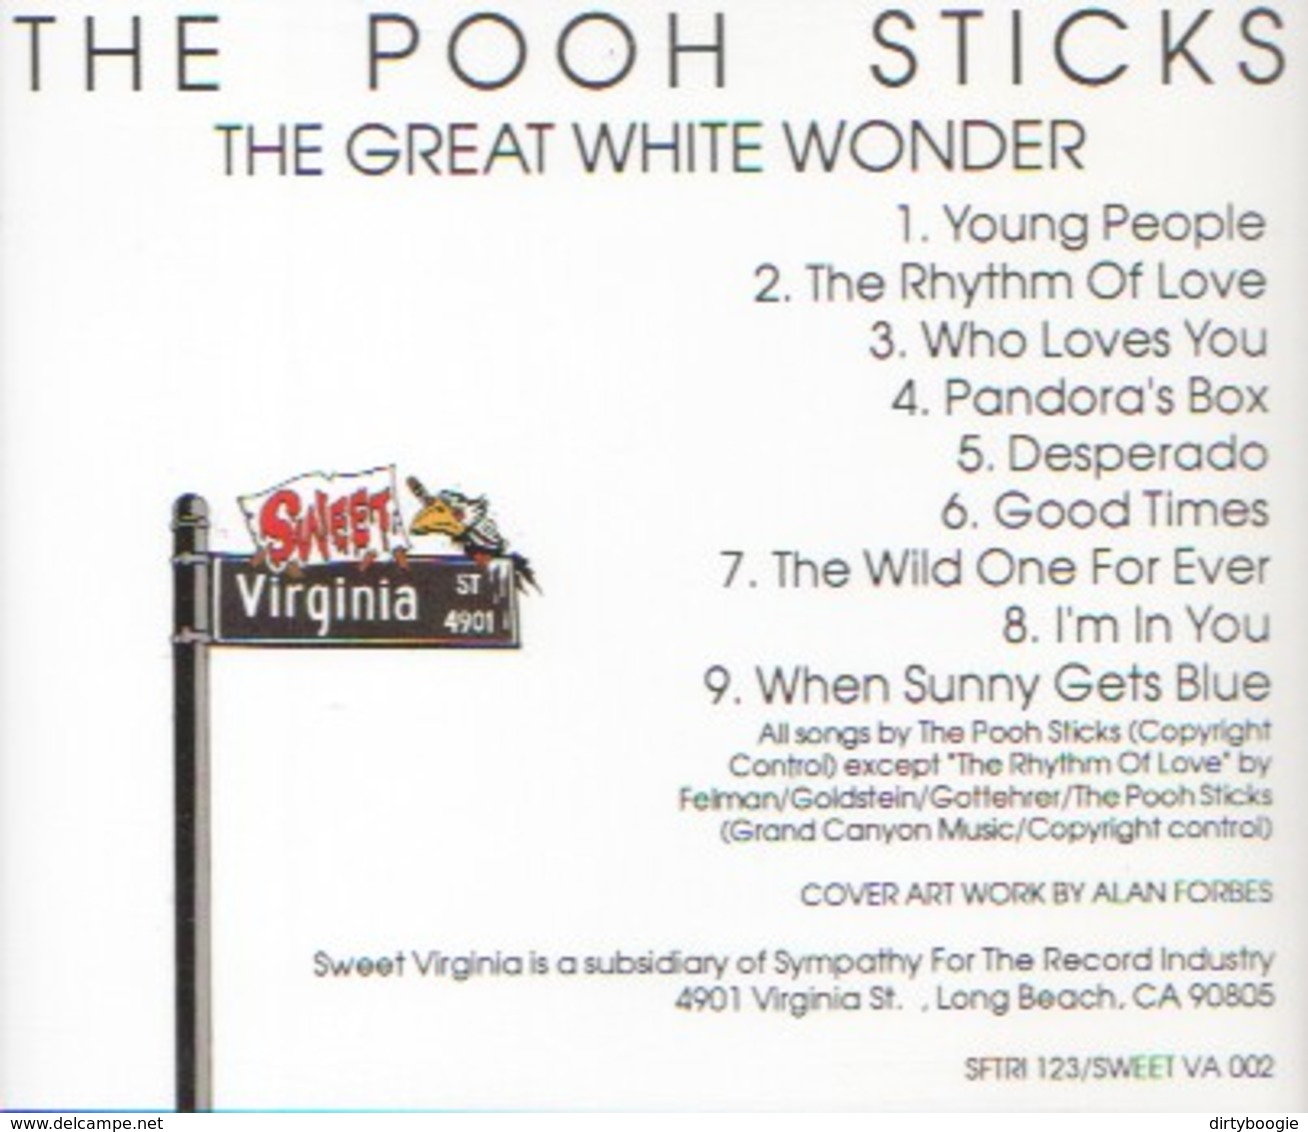 POOOH STICKS - The Great White Wonder - CD - INDIE PSYCHE POP - Rock